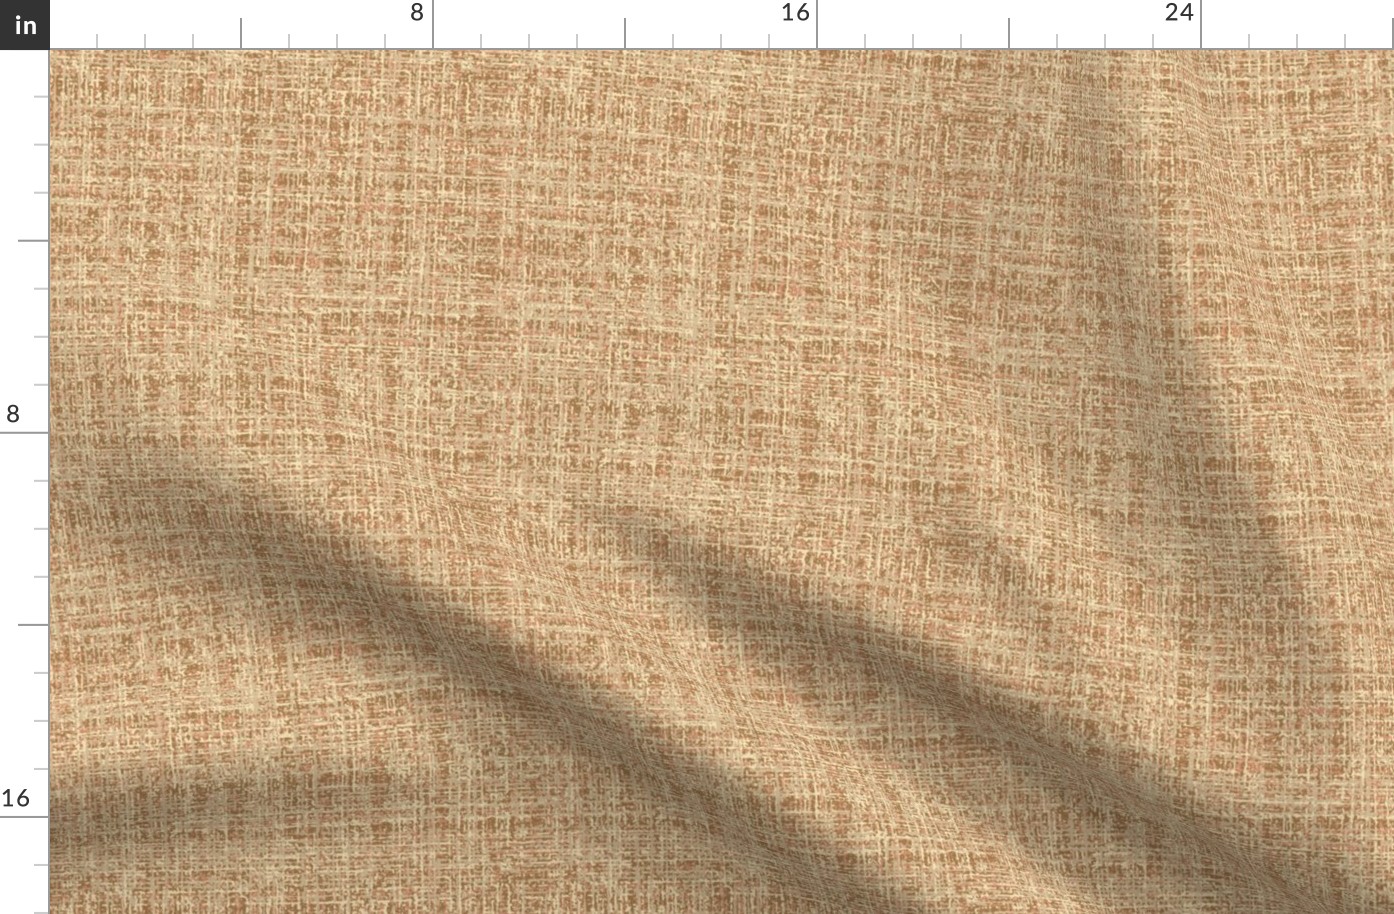 Woollen Tweed Texture Ochre Terracotta